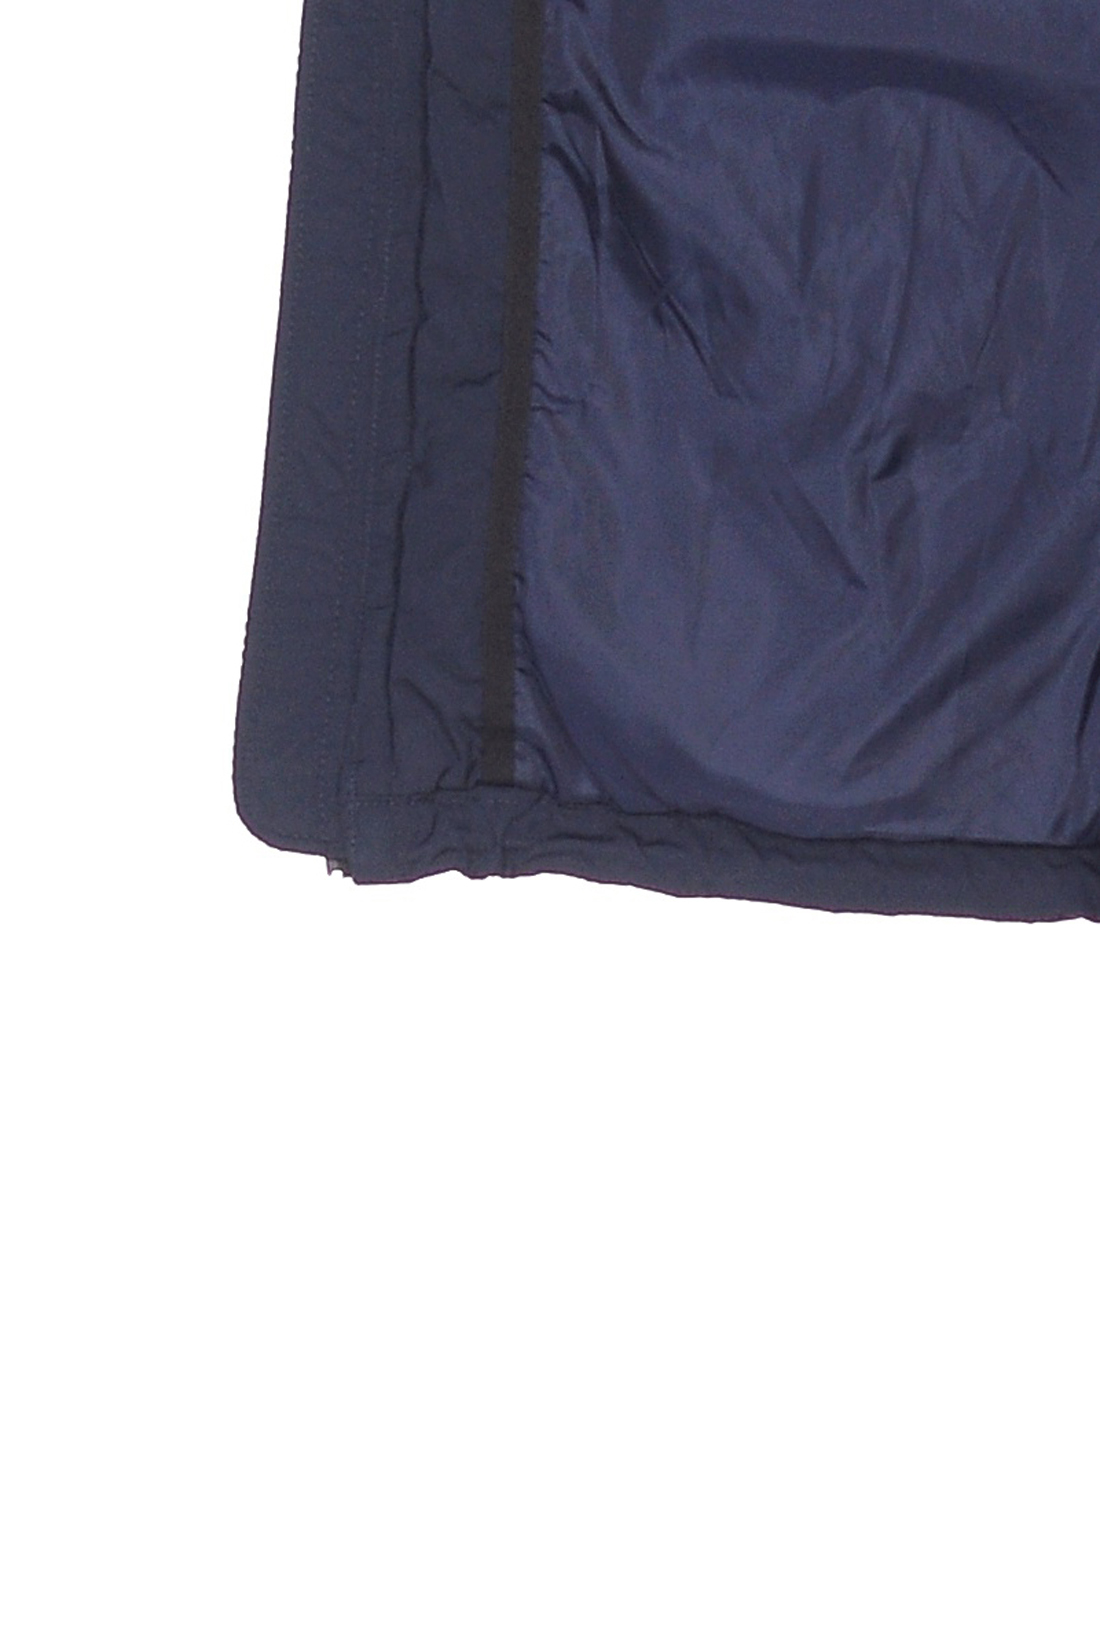 Пуховик с влагонепроницаемыми молниями (арт. baon B508513), размер L, цвет синий Пуховик с влагонепроницаемыми молниями (арт. baon B508513) - фото 4